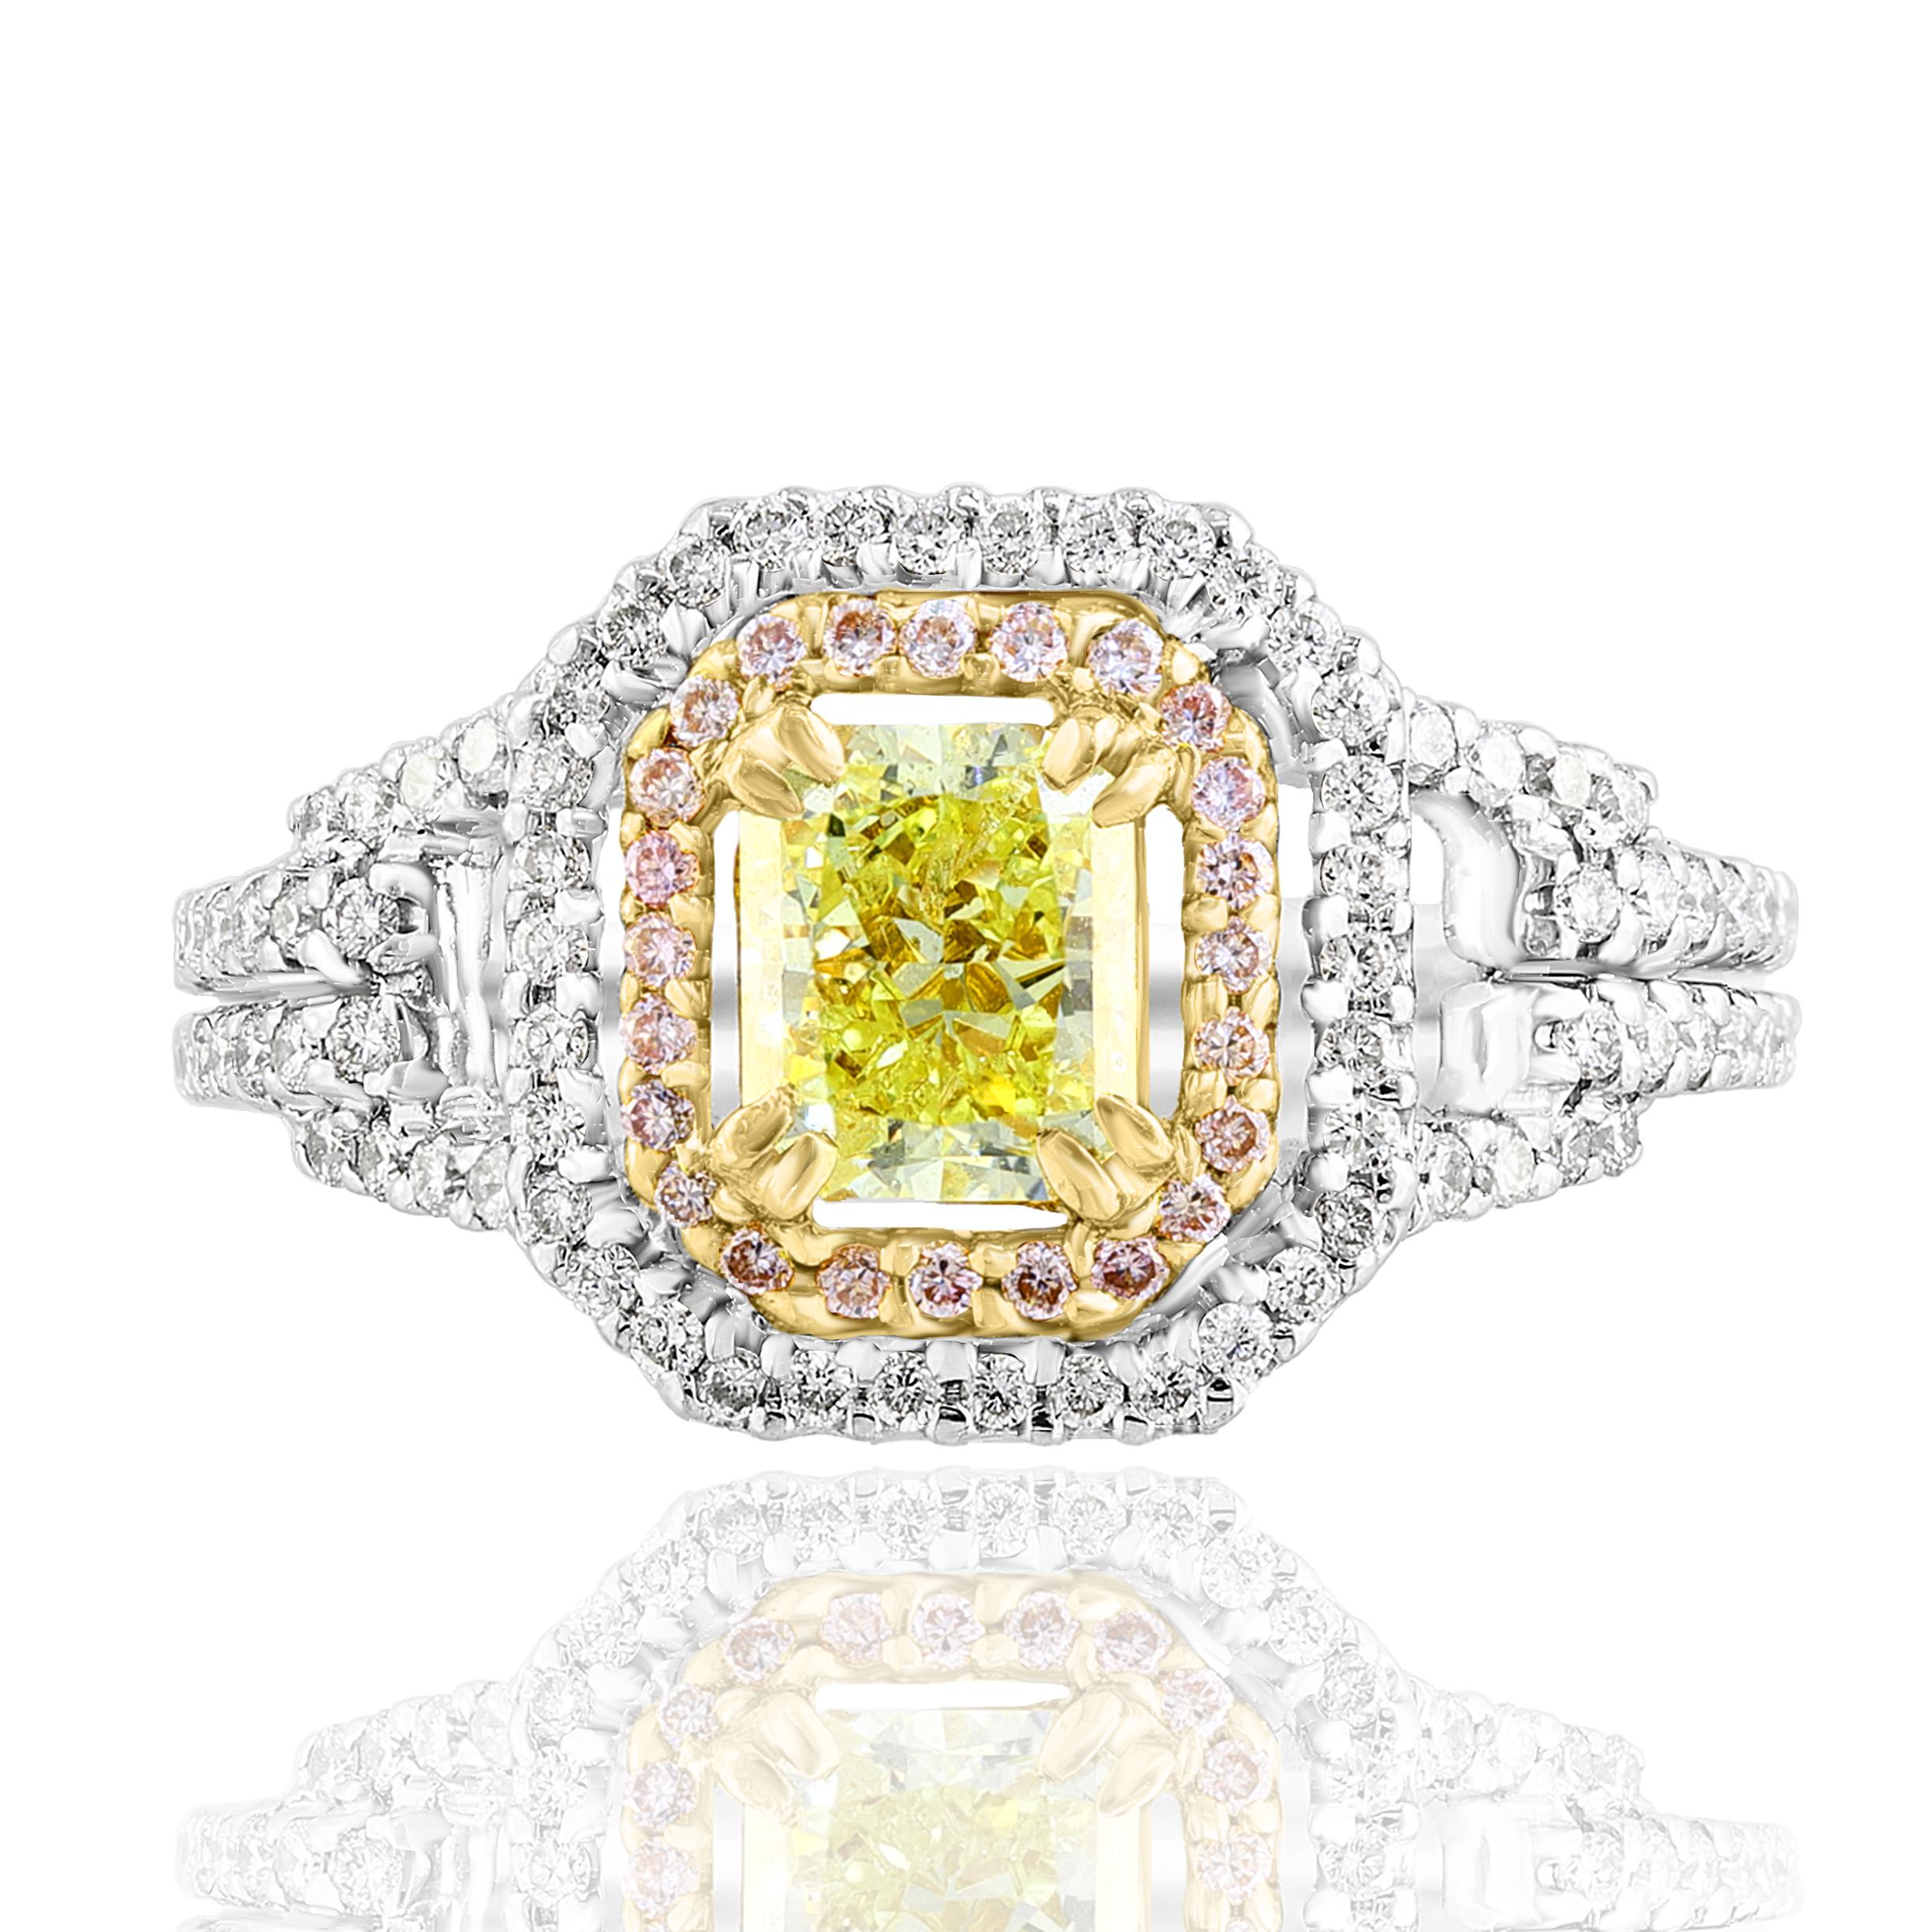 Ein atemberaubender Ring mit einem gelben Diamanten im Smaragdschliff mit einem Gewicht von 1,00 Karat, umgeben von einer Reihe rosafarbener Diamanten und weißen Diamanten auf halber Höhe des Schafts. Den Mittelstein flankieren die Diamanten mit